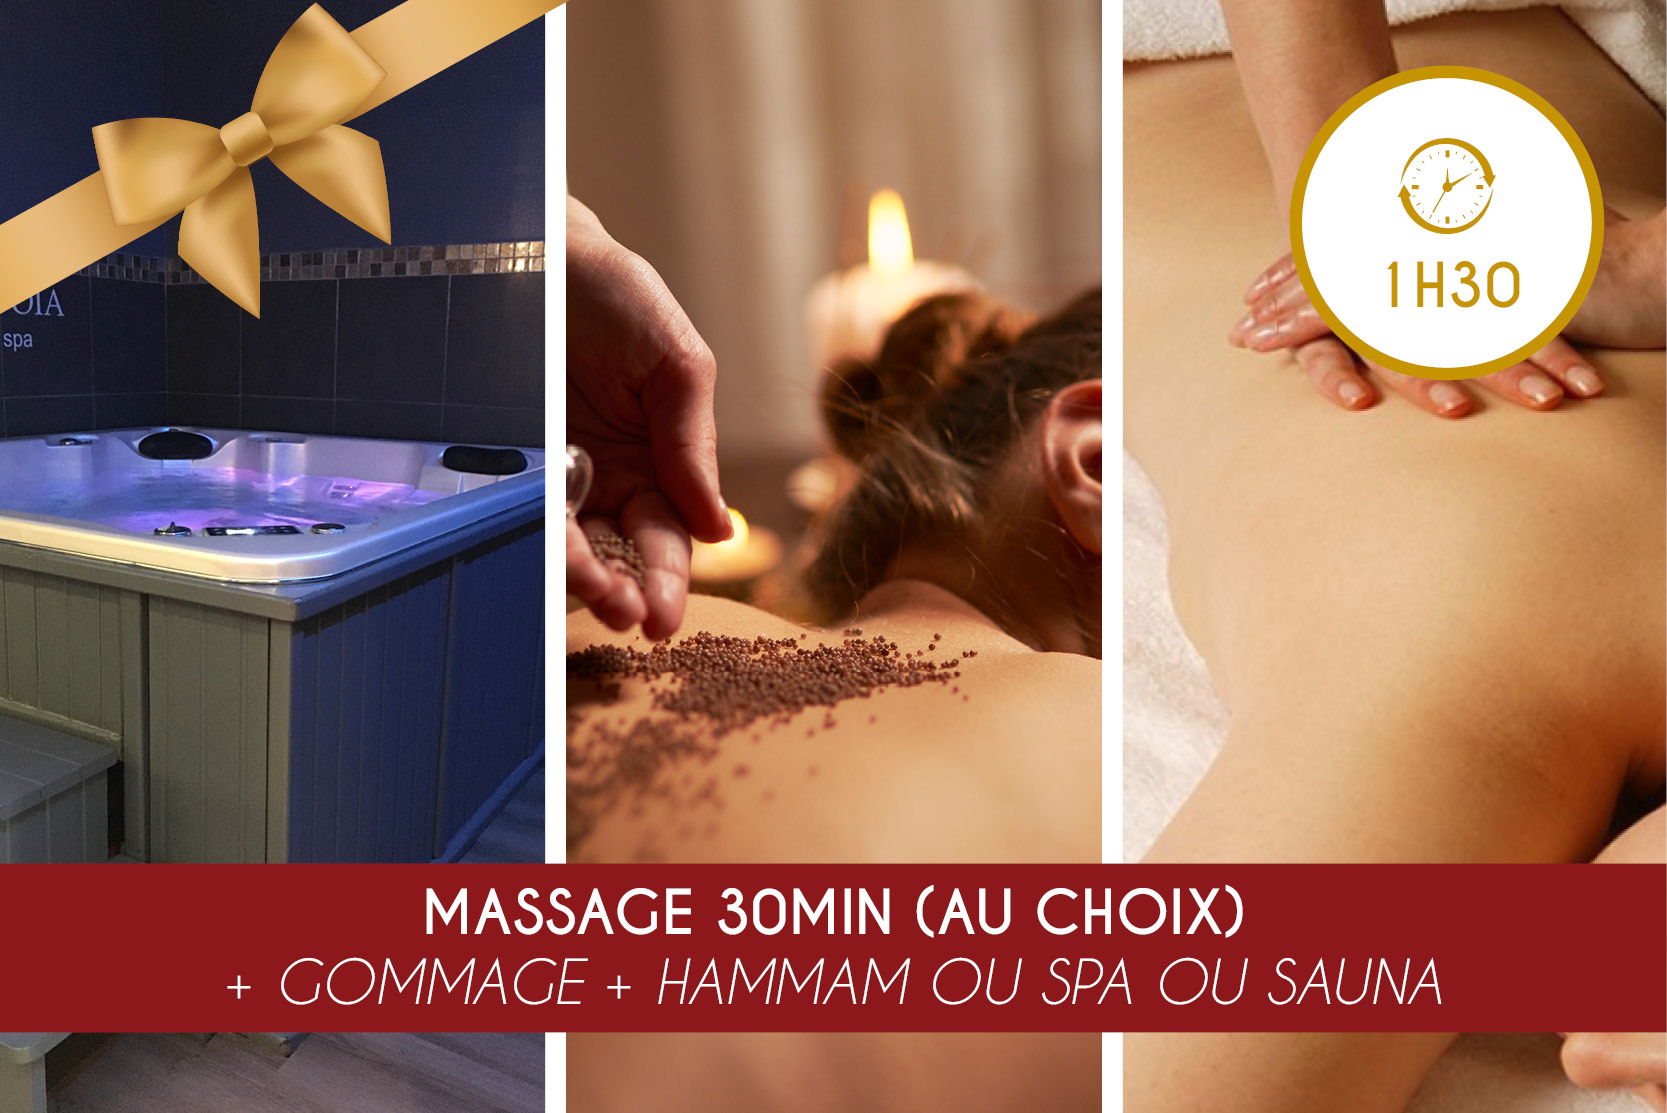 Massage 30min + Gommage + Hammam OU Spa OU Sauna